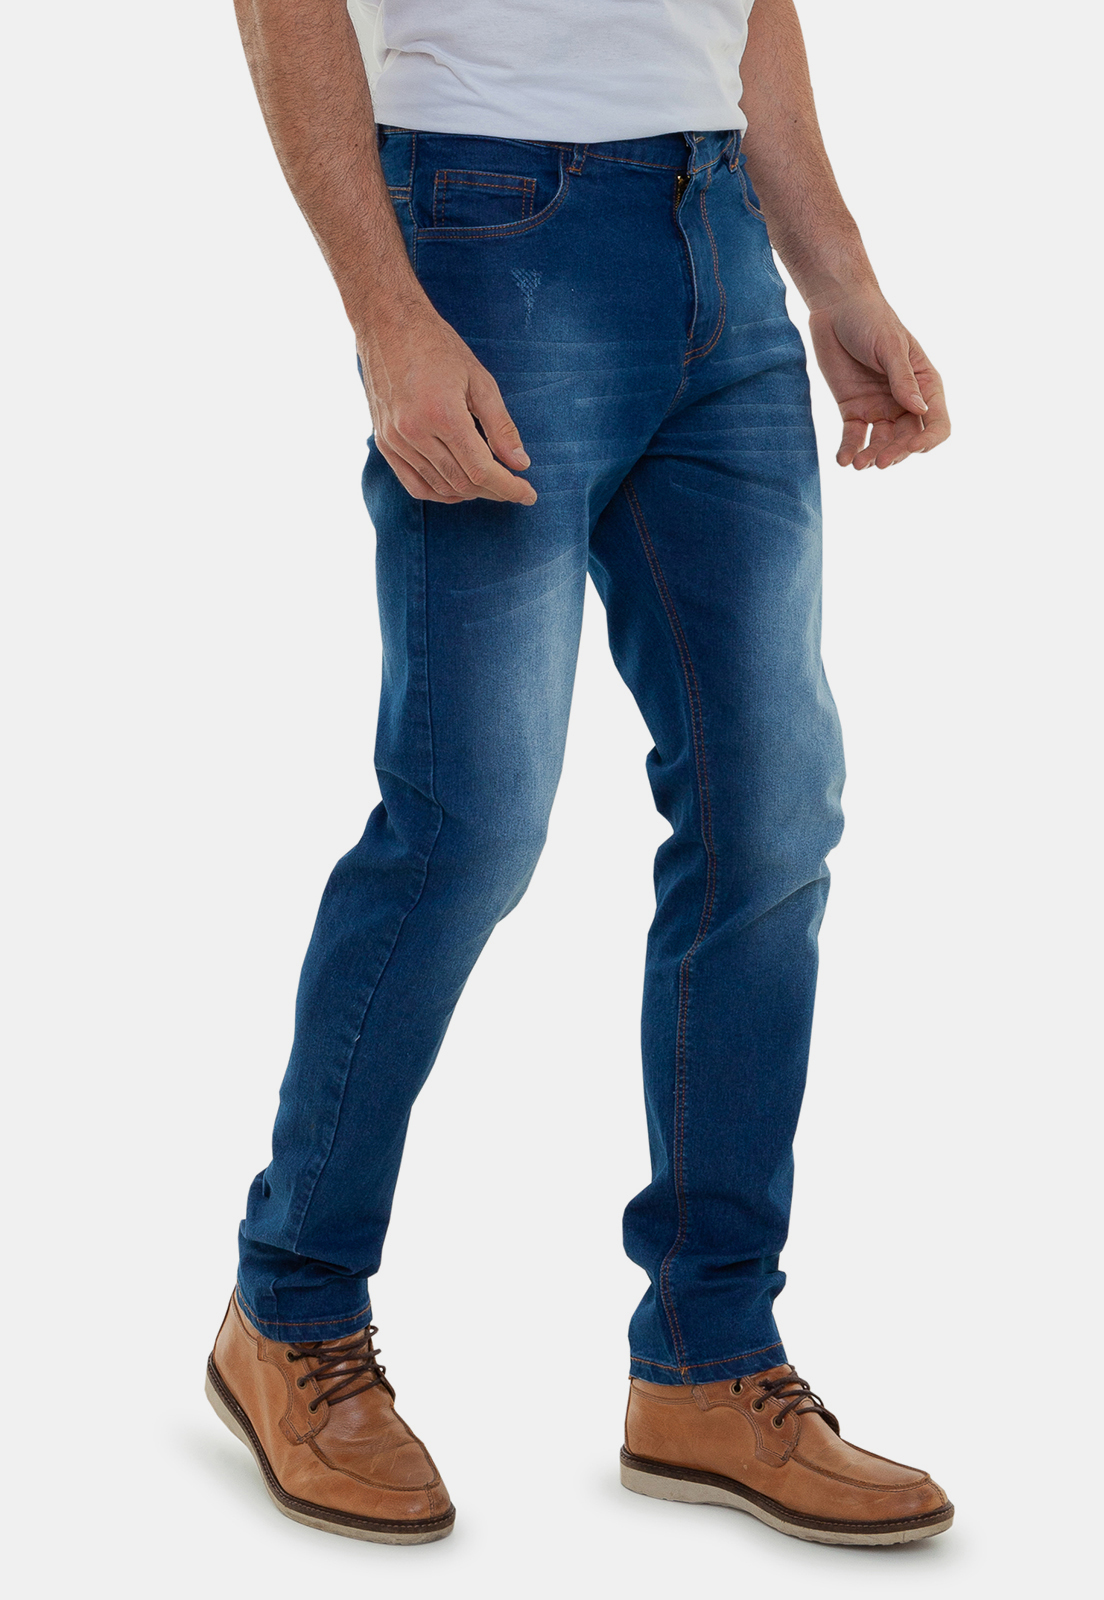 Calça jeans masculina: veja como usar essa peça versátil e